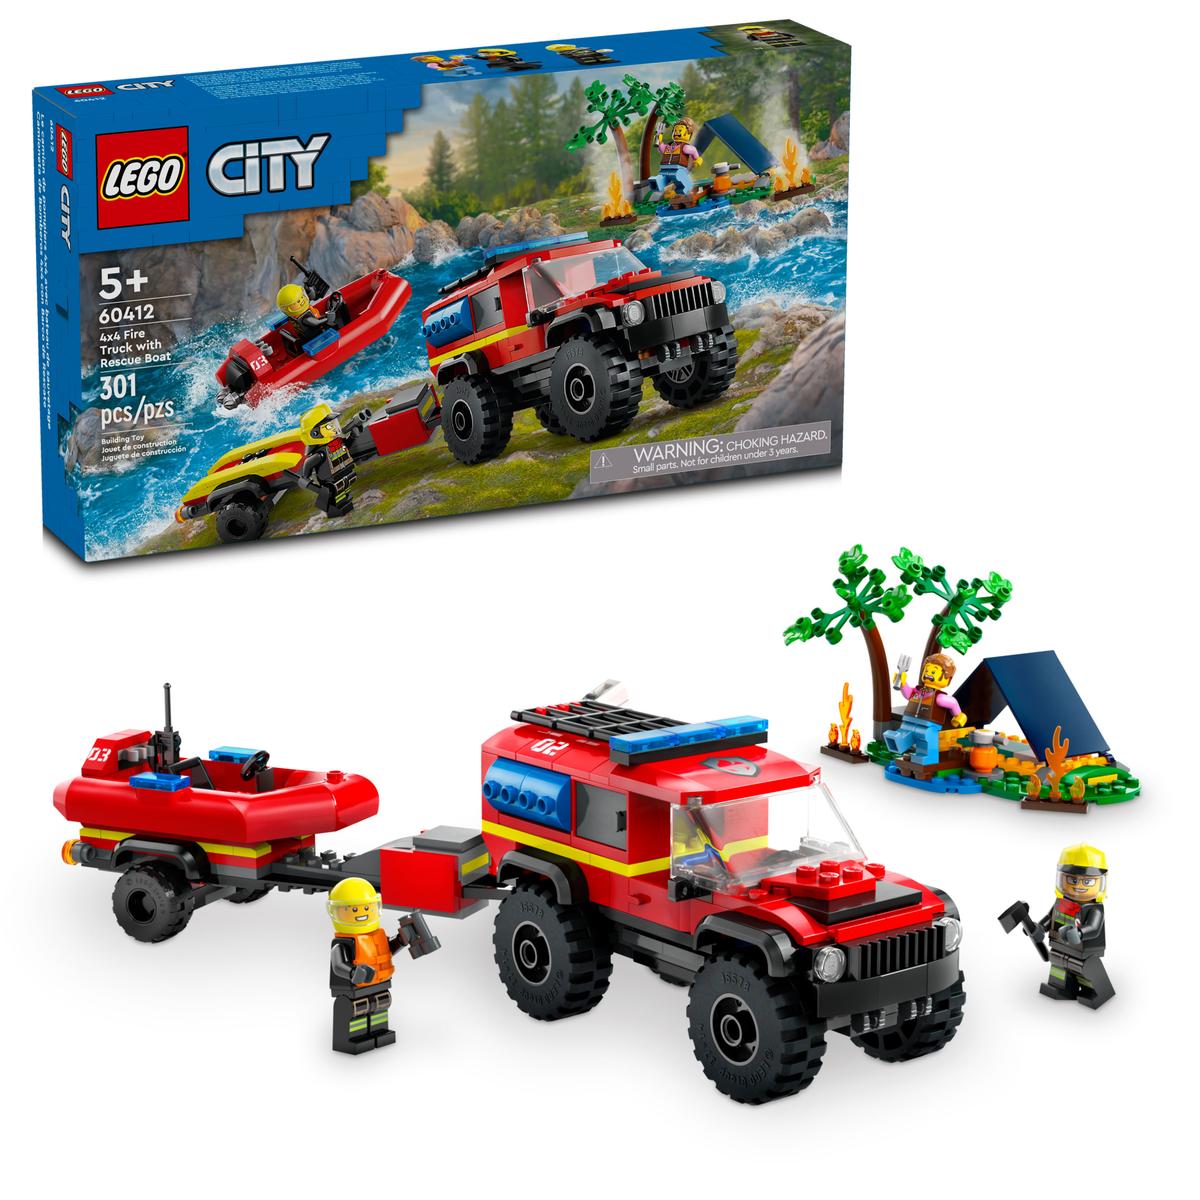 Lego City 60412 - Feuerwehrgeländewagen mit Rettungsboot